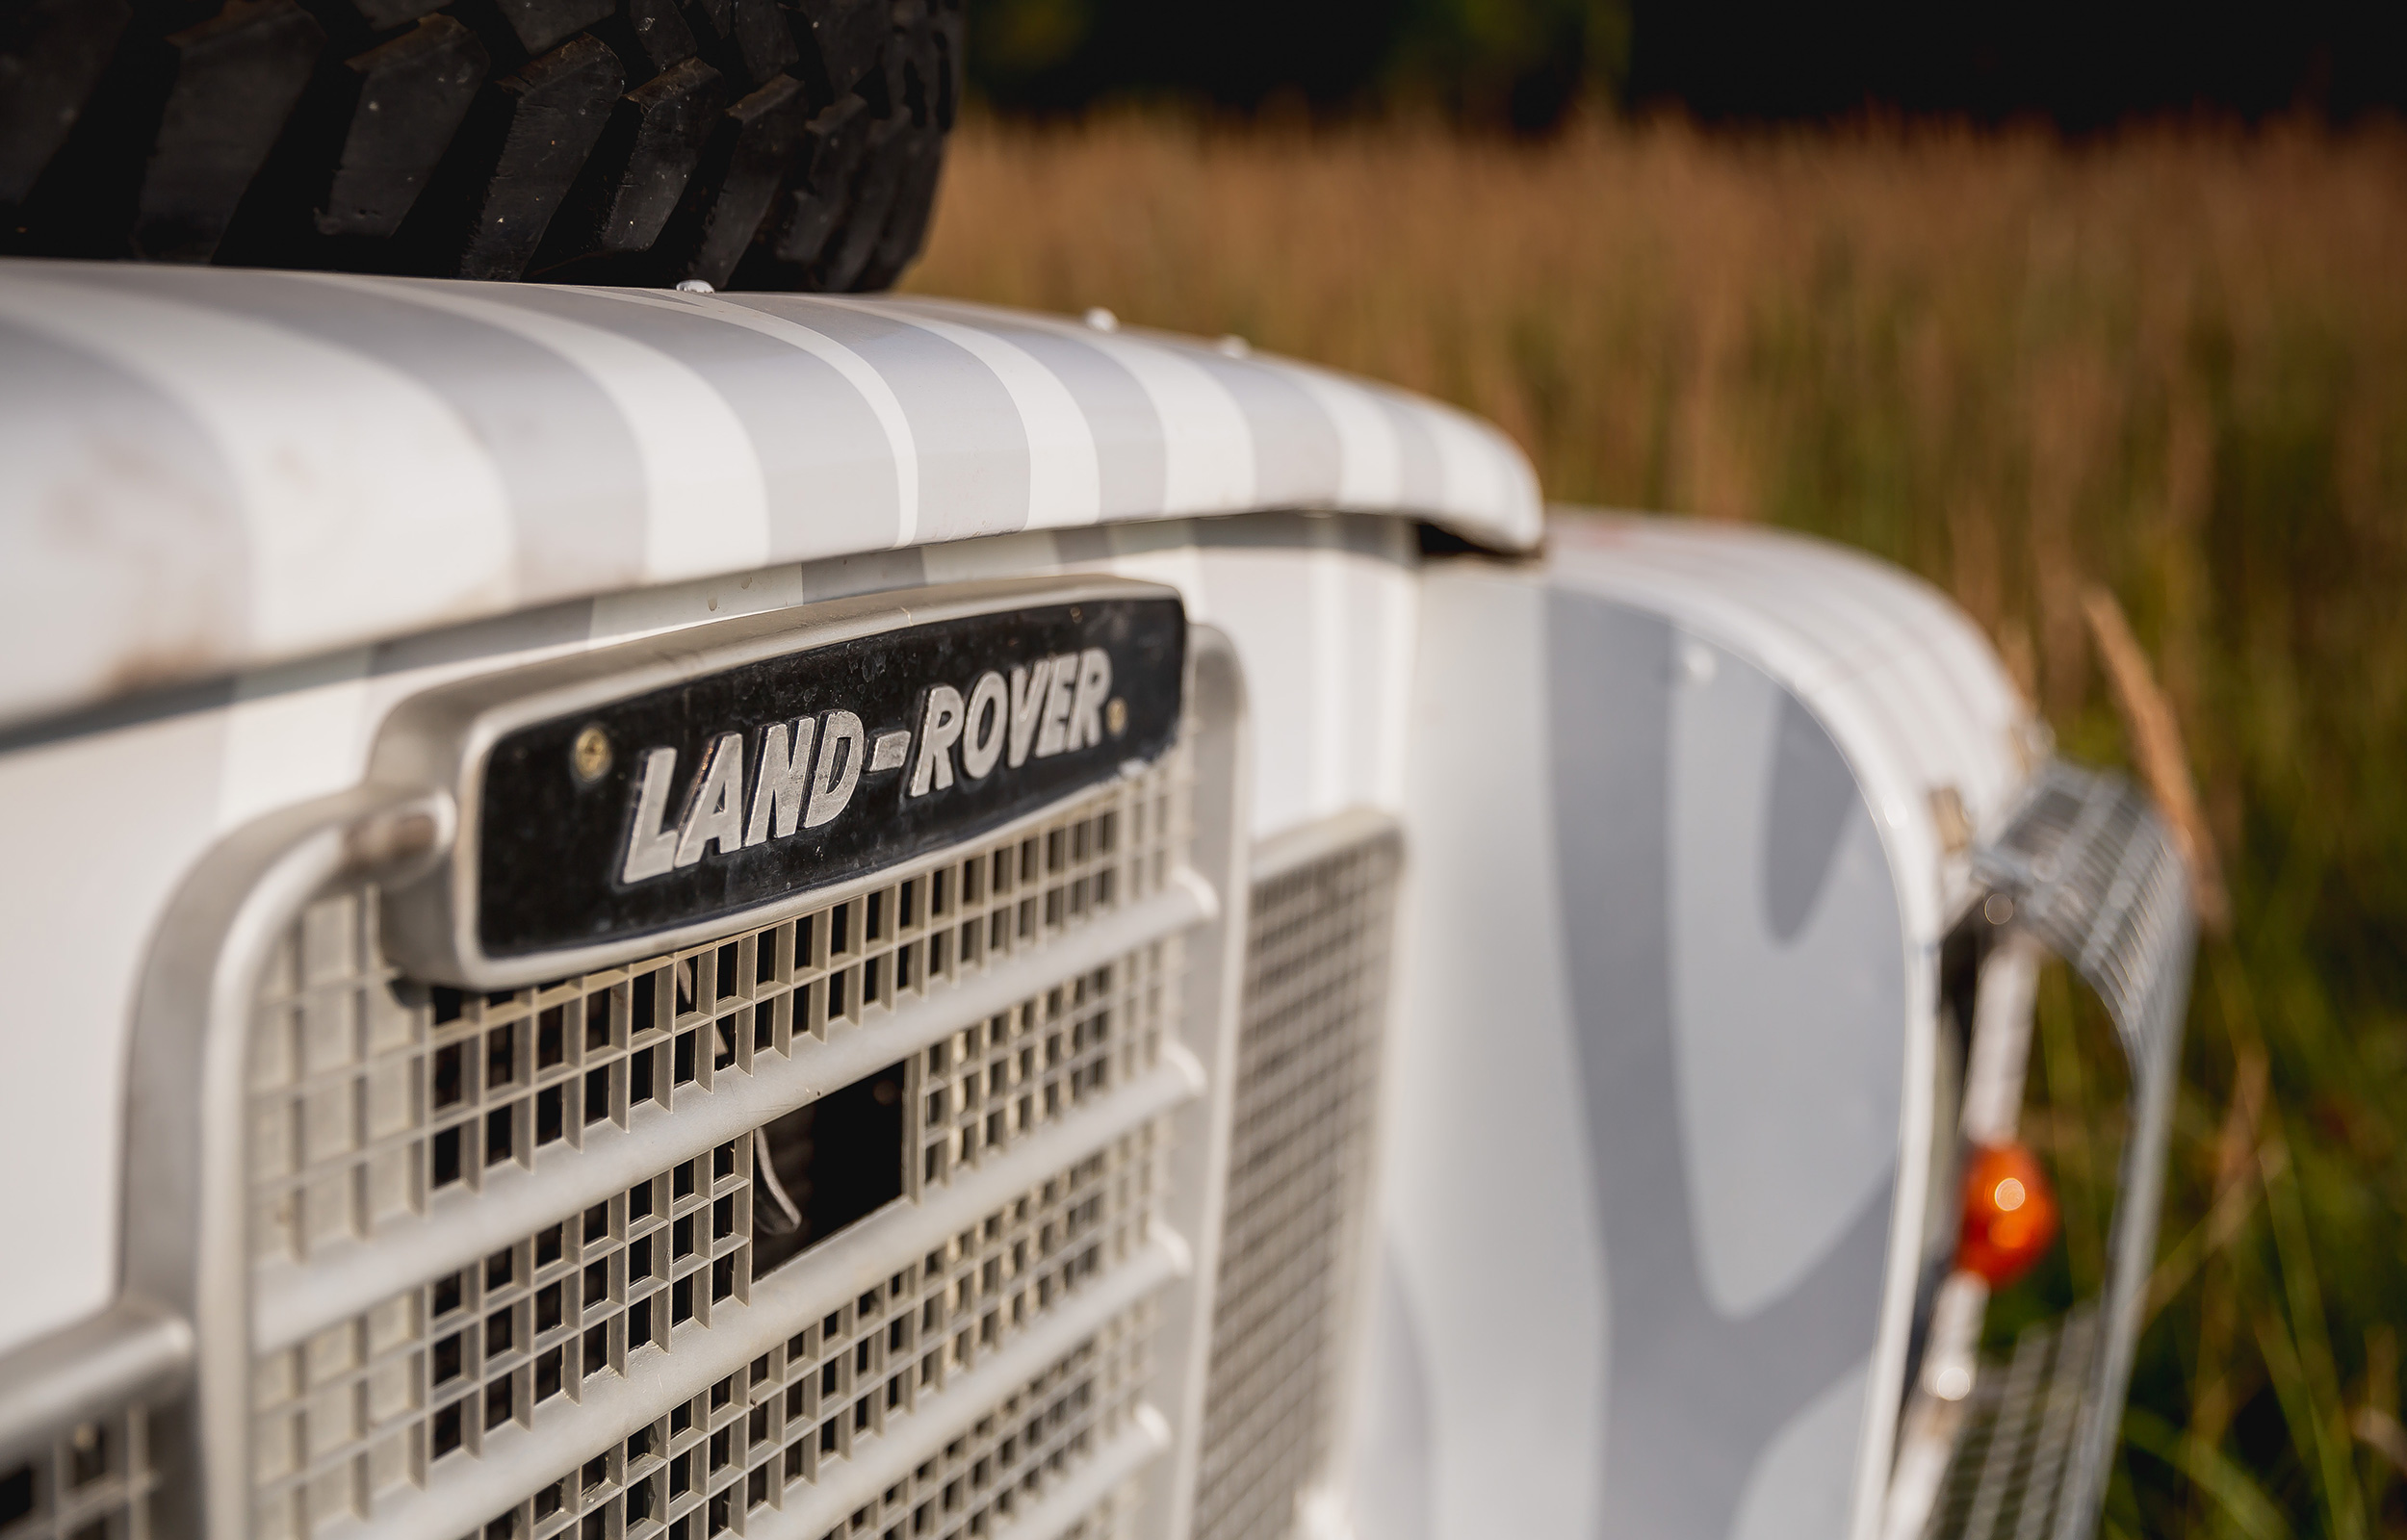 Land Rover zkušební offroad jízda 1 hodina